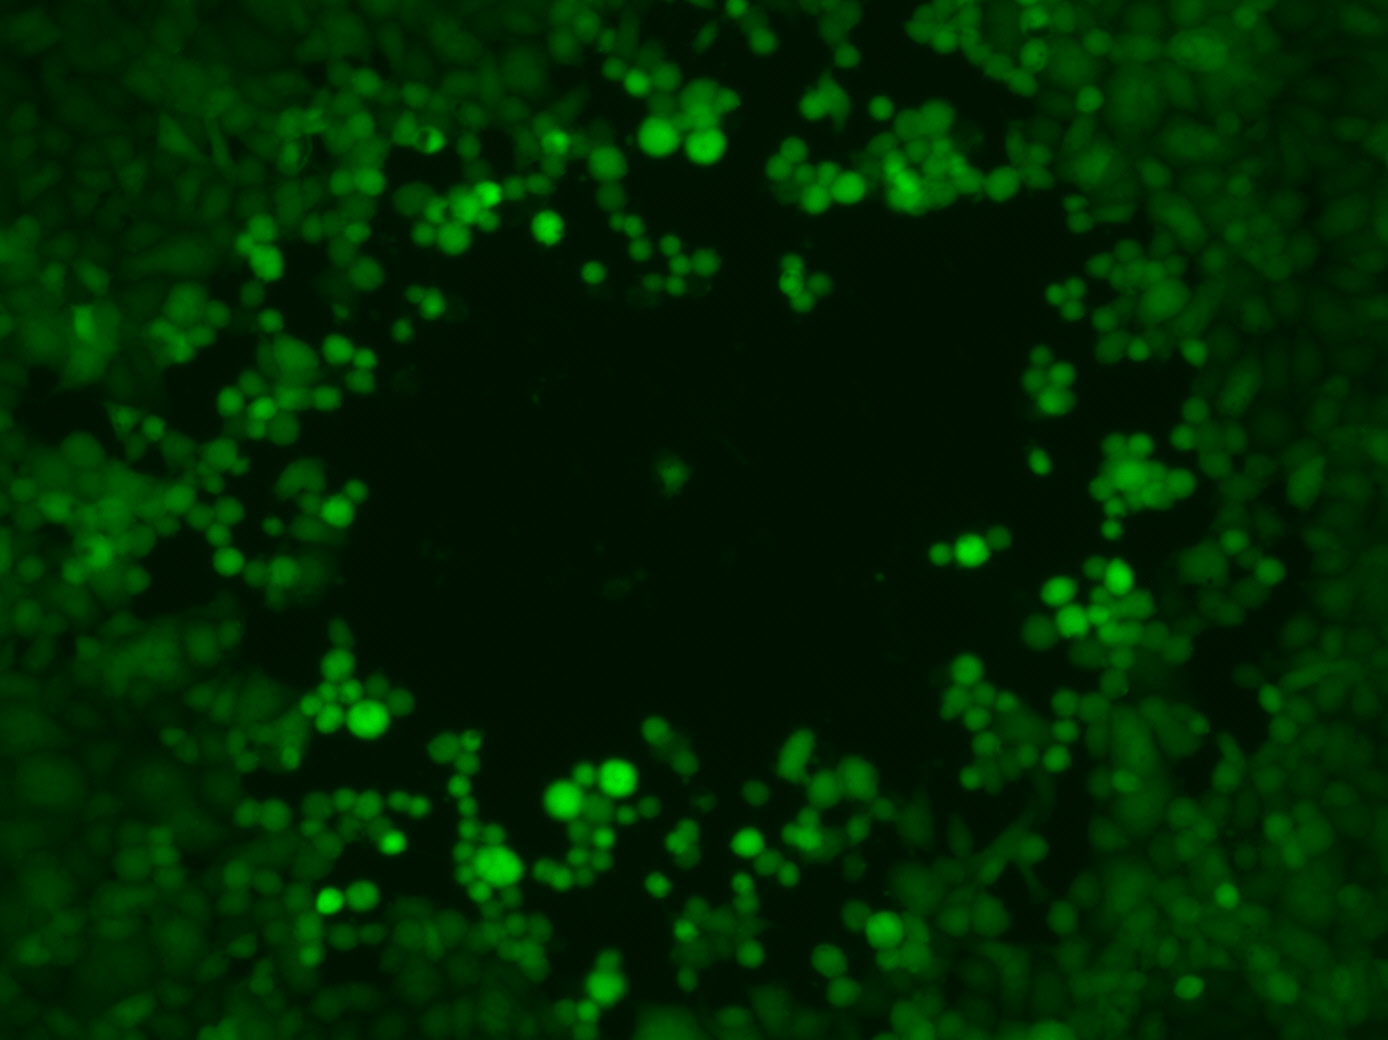 Plaquebildung von Zellkulturzellen durch einen engineerten, grün fluoreszierenden Herpes-simplex-Virus 1. Durch Vermehrung eines einzelnen Virus entsteht lokal ein Lysehof (Plaque), der an den Rändern durch noch lebende Zellen leuchtet.